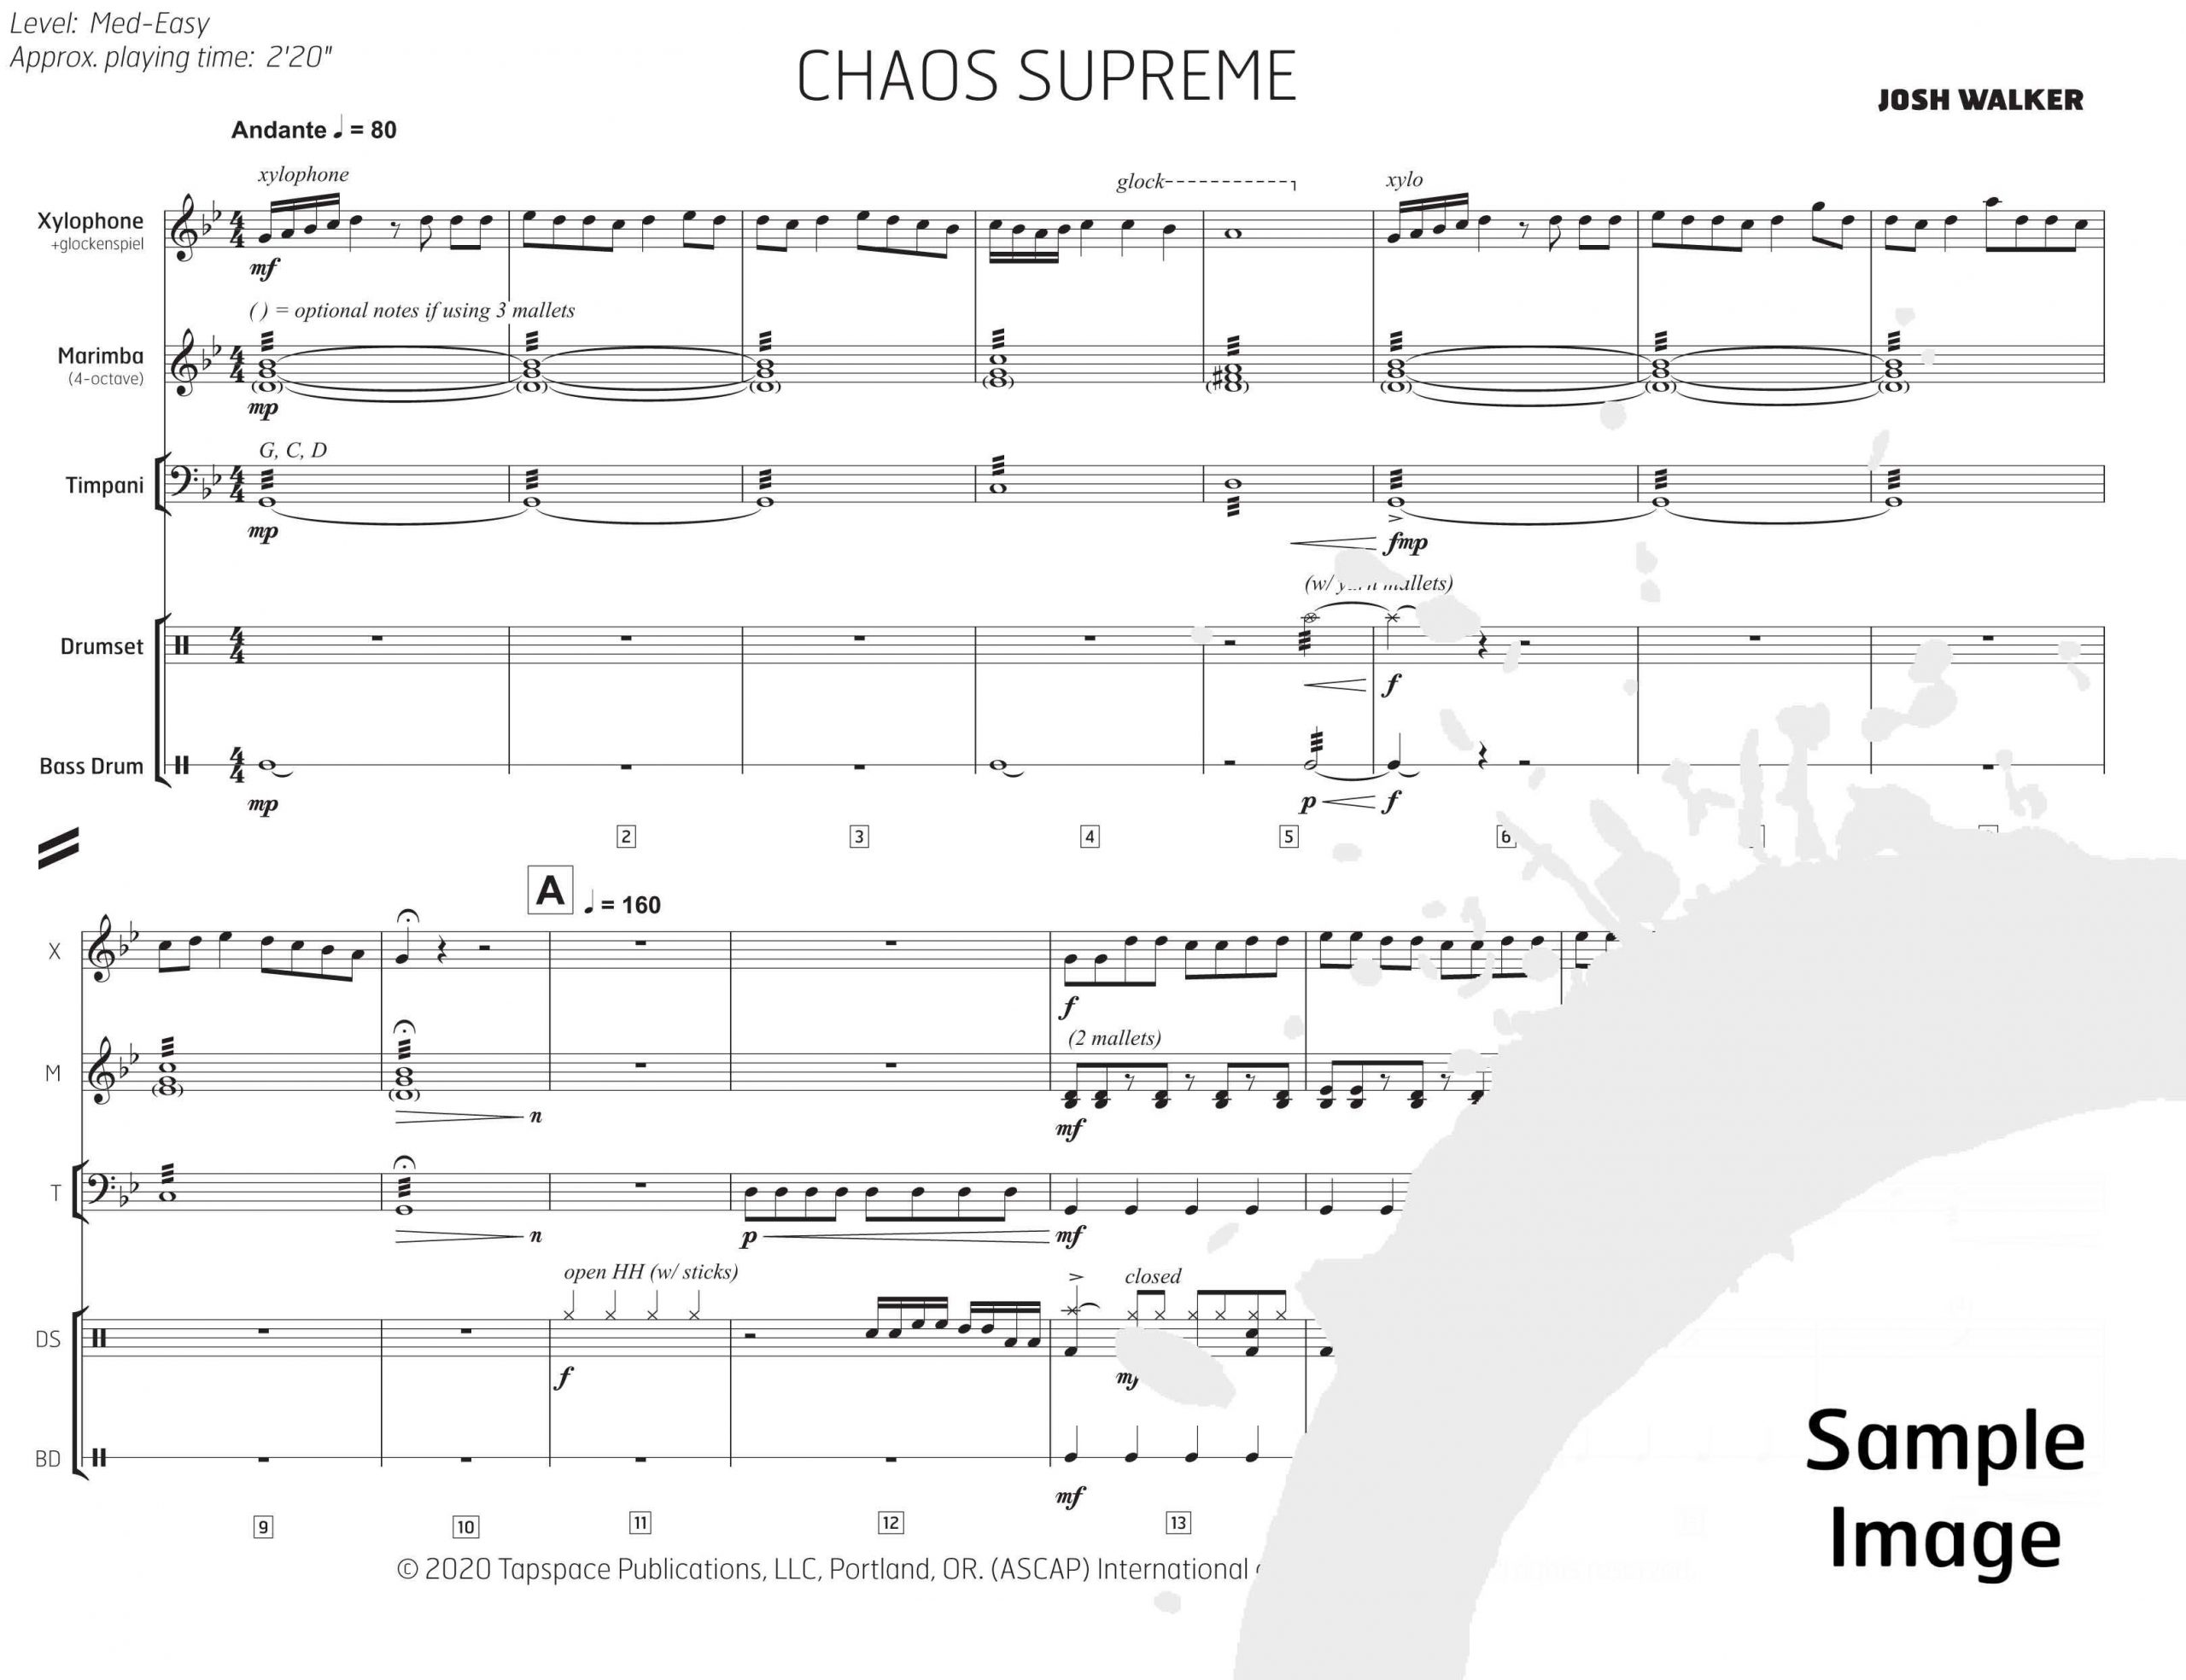 Chaos Supreme by Josh Walker